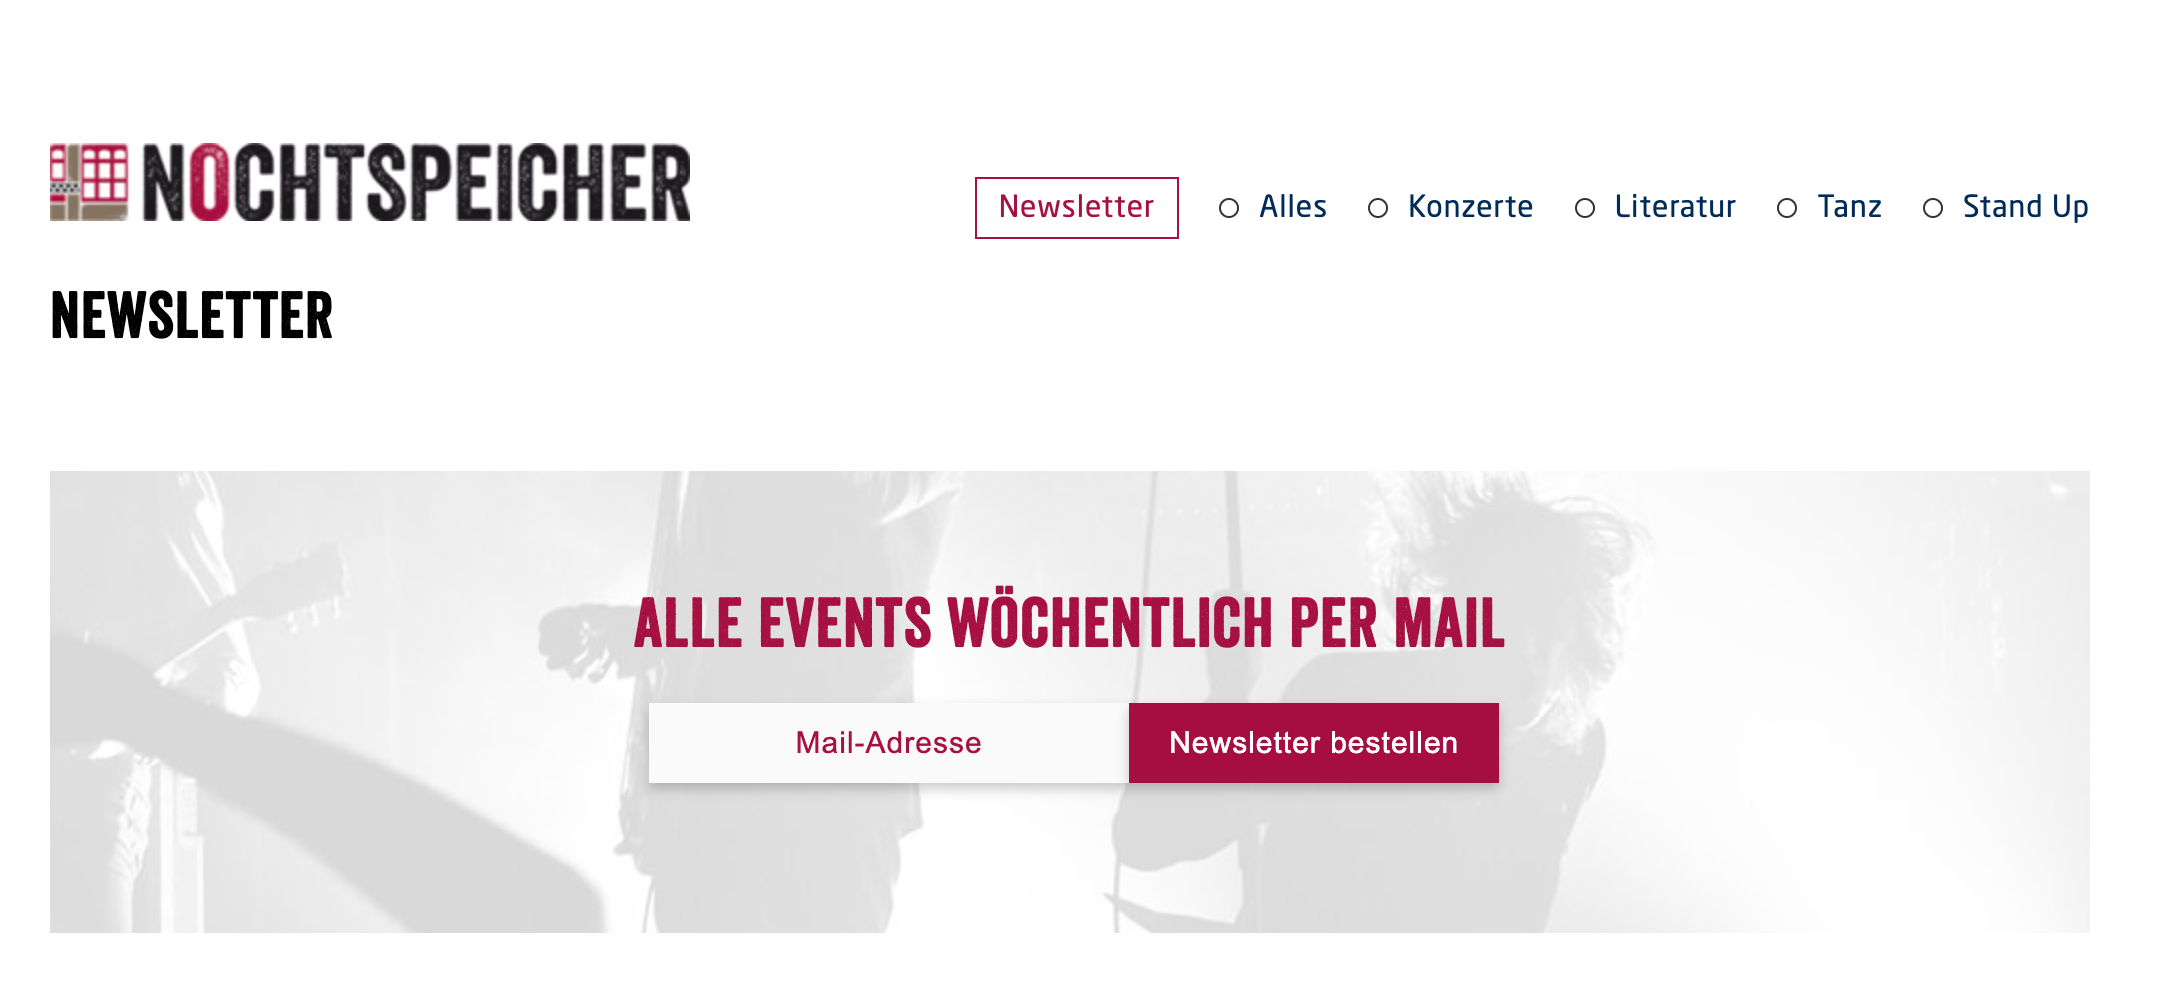 E-Mail-Anmeldemöglichkeit für Musik-Veranstaltungsort Nochtspeicher in Hamburg